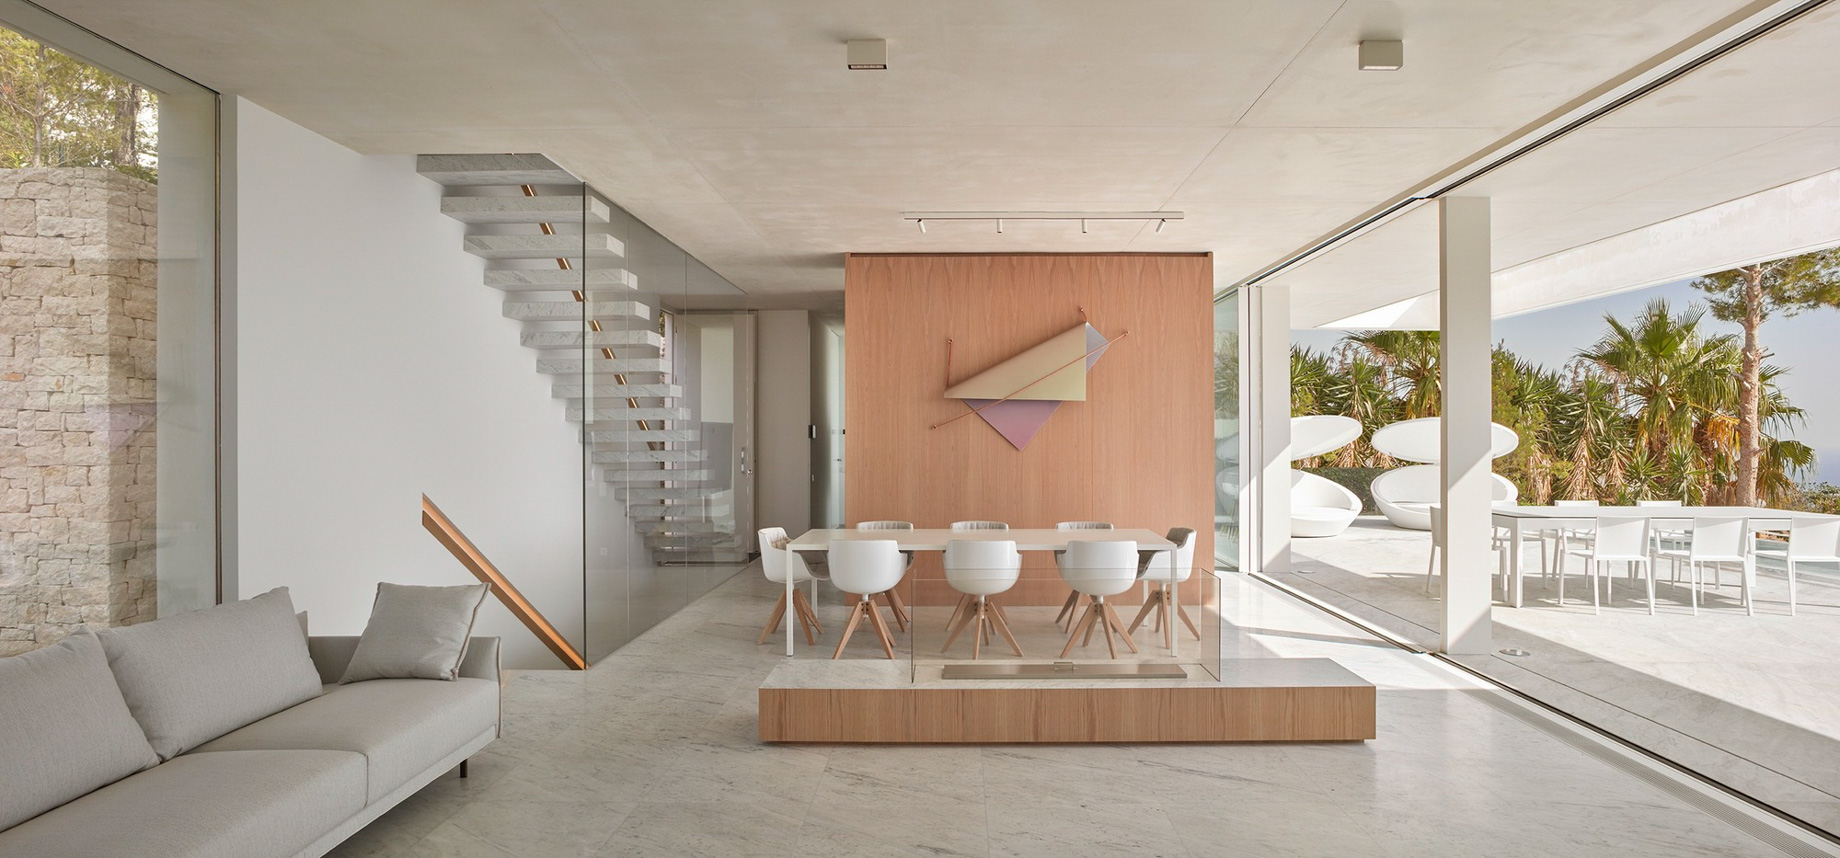 Casa Oslo Modern Contemporary Residence – Alicante, Spain – 10